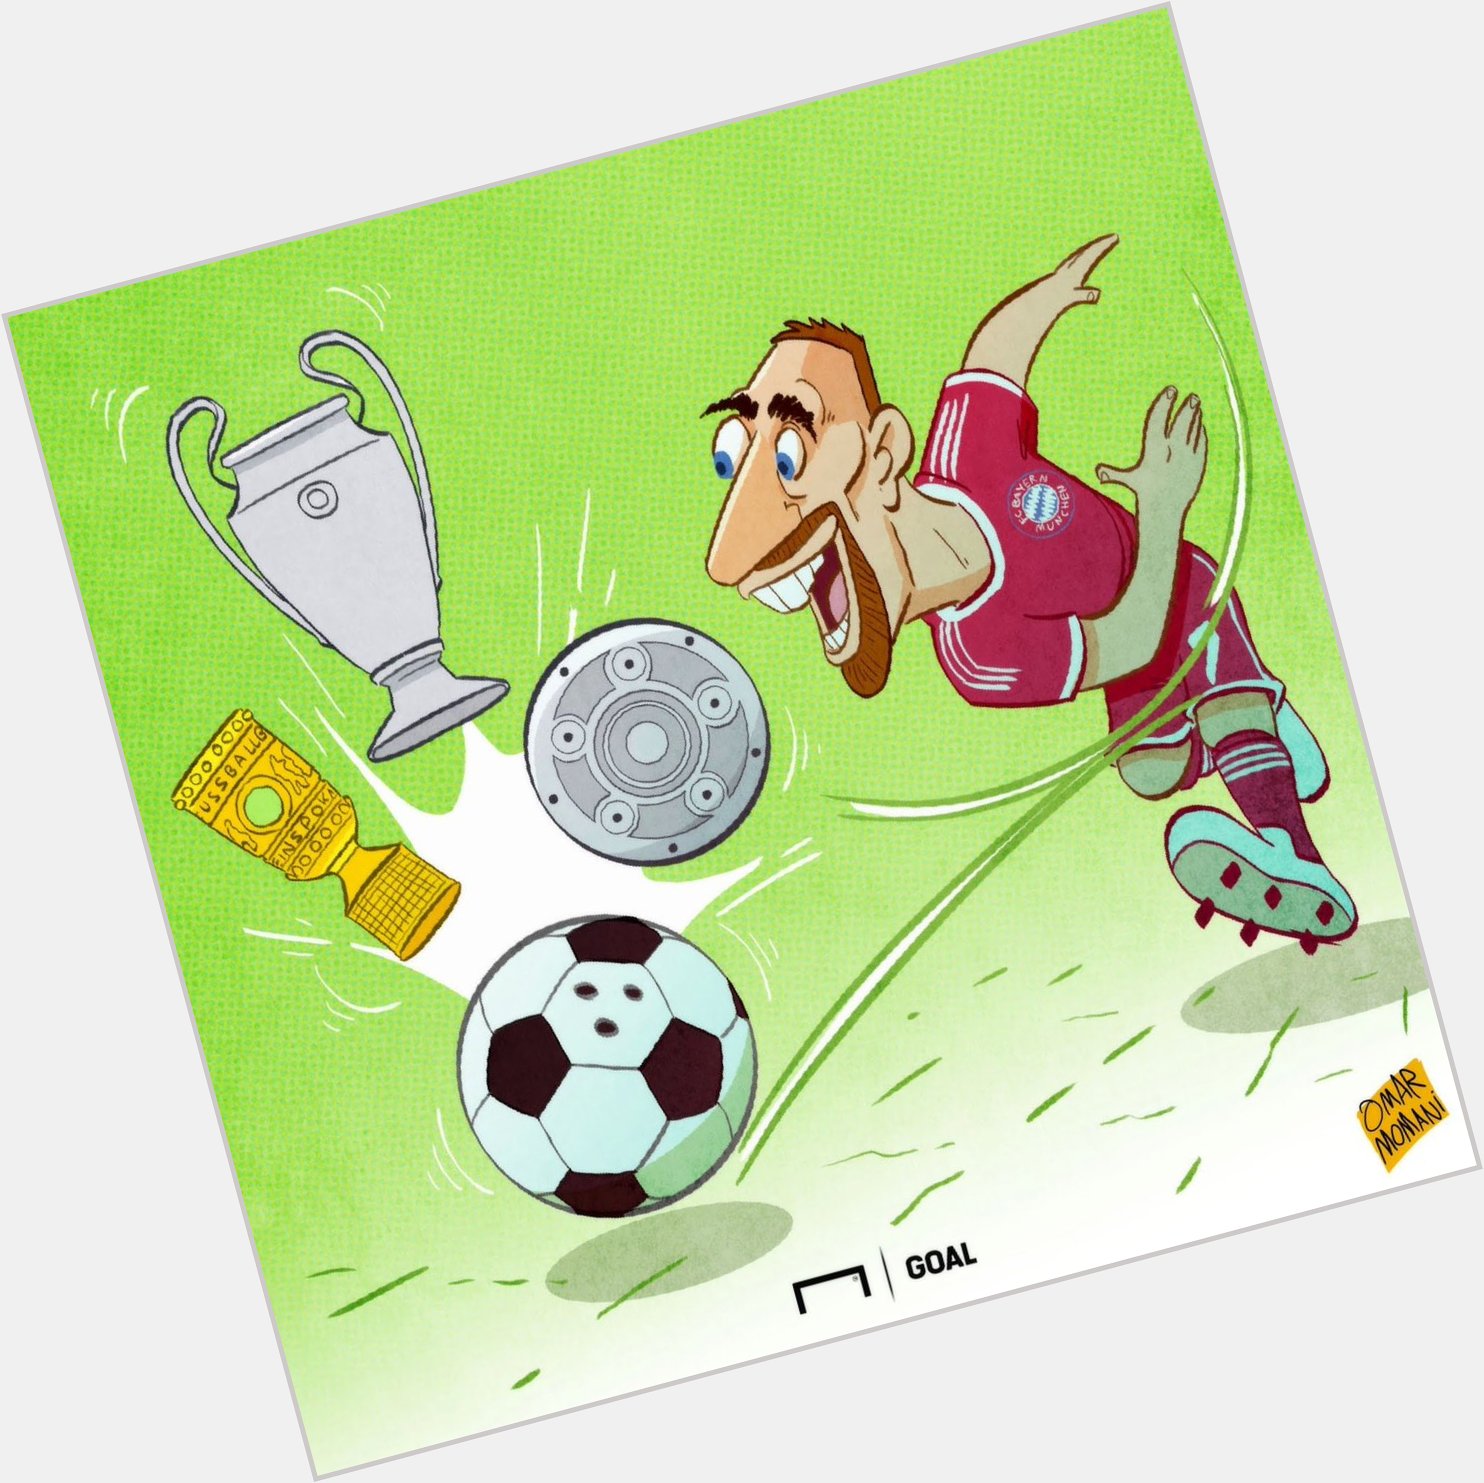 Happy birthday Franck Ribery

For more cartoons:  